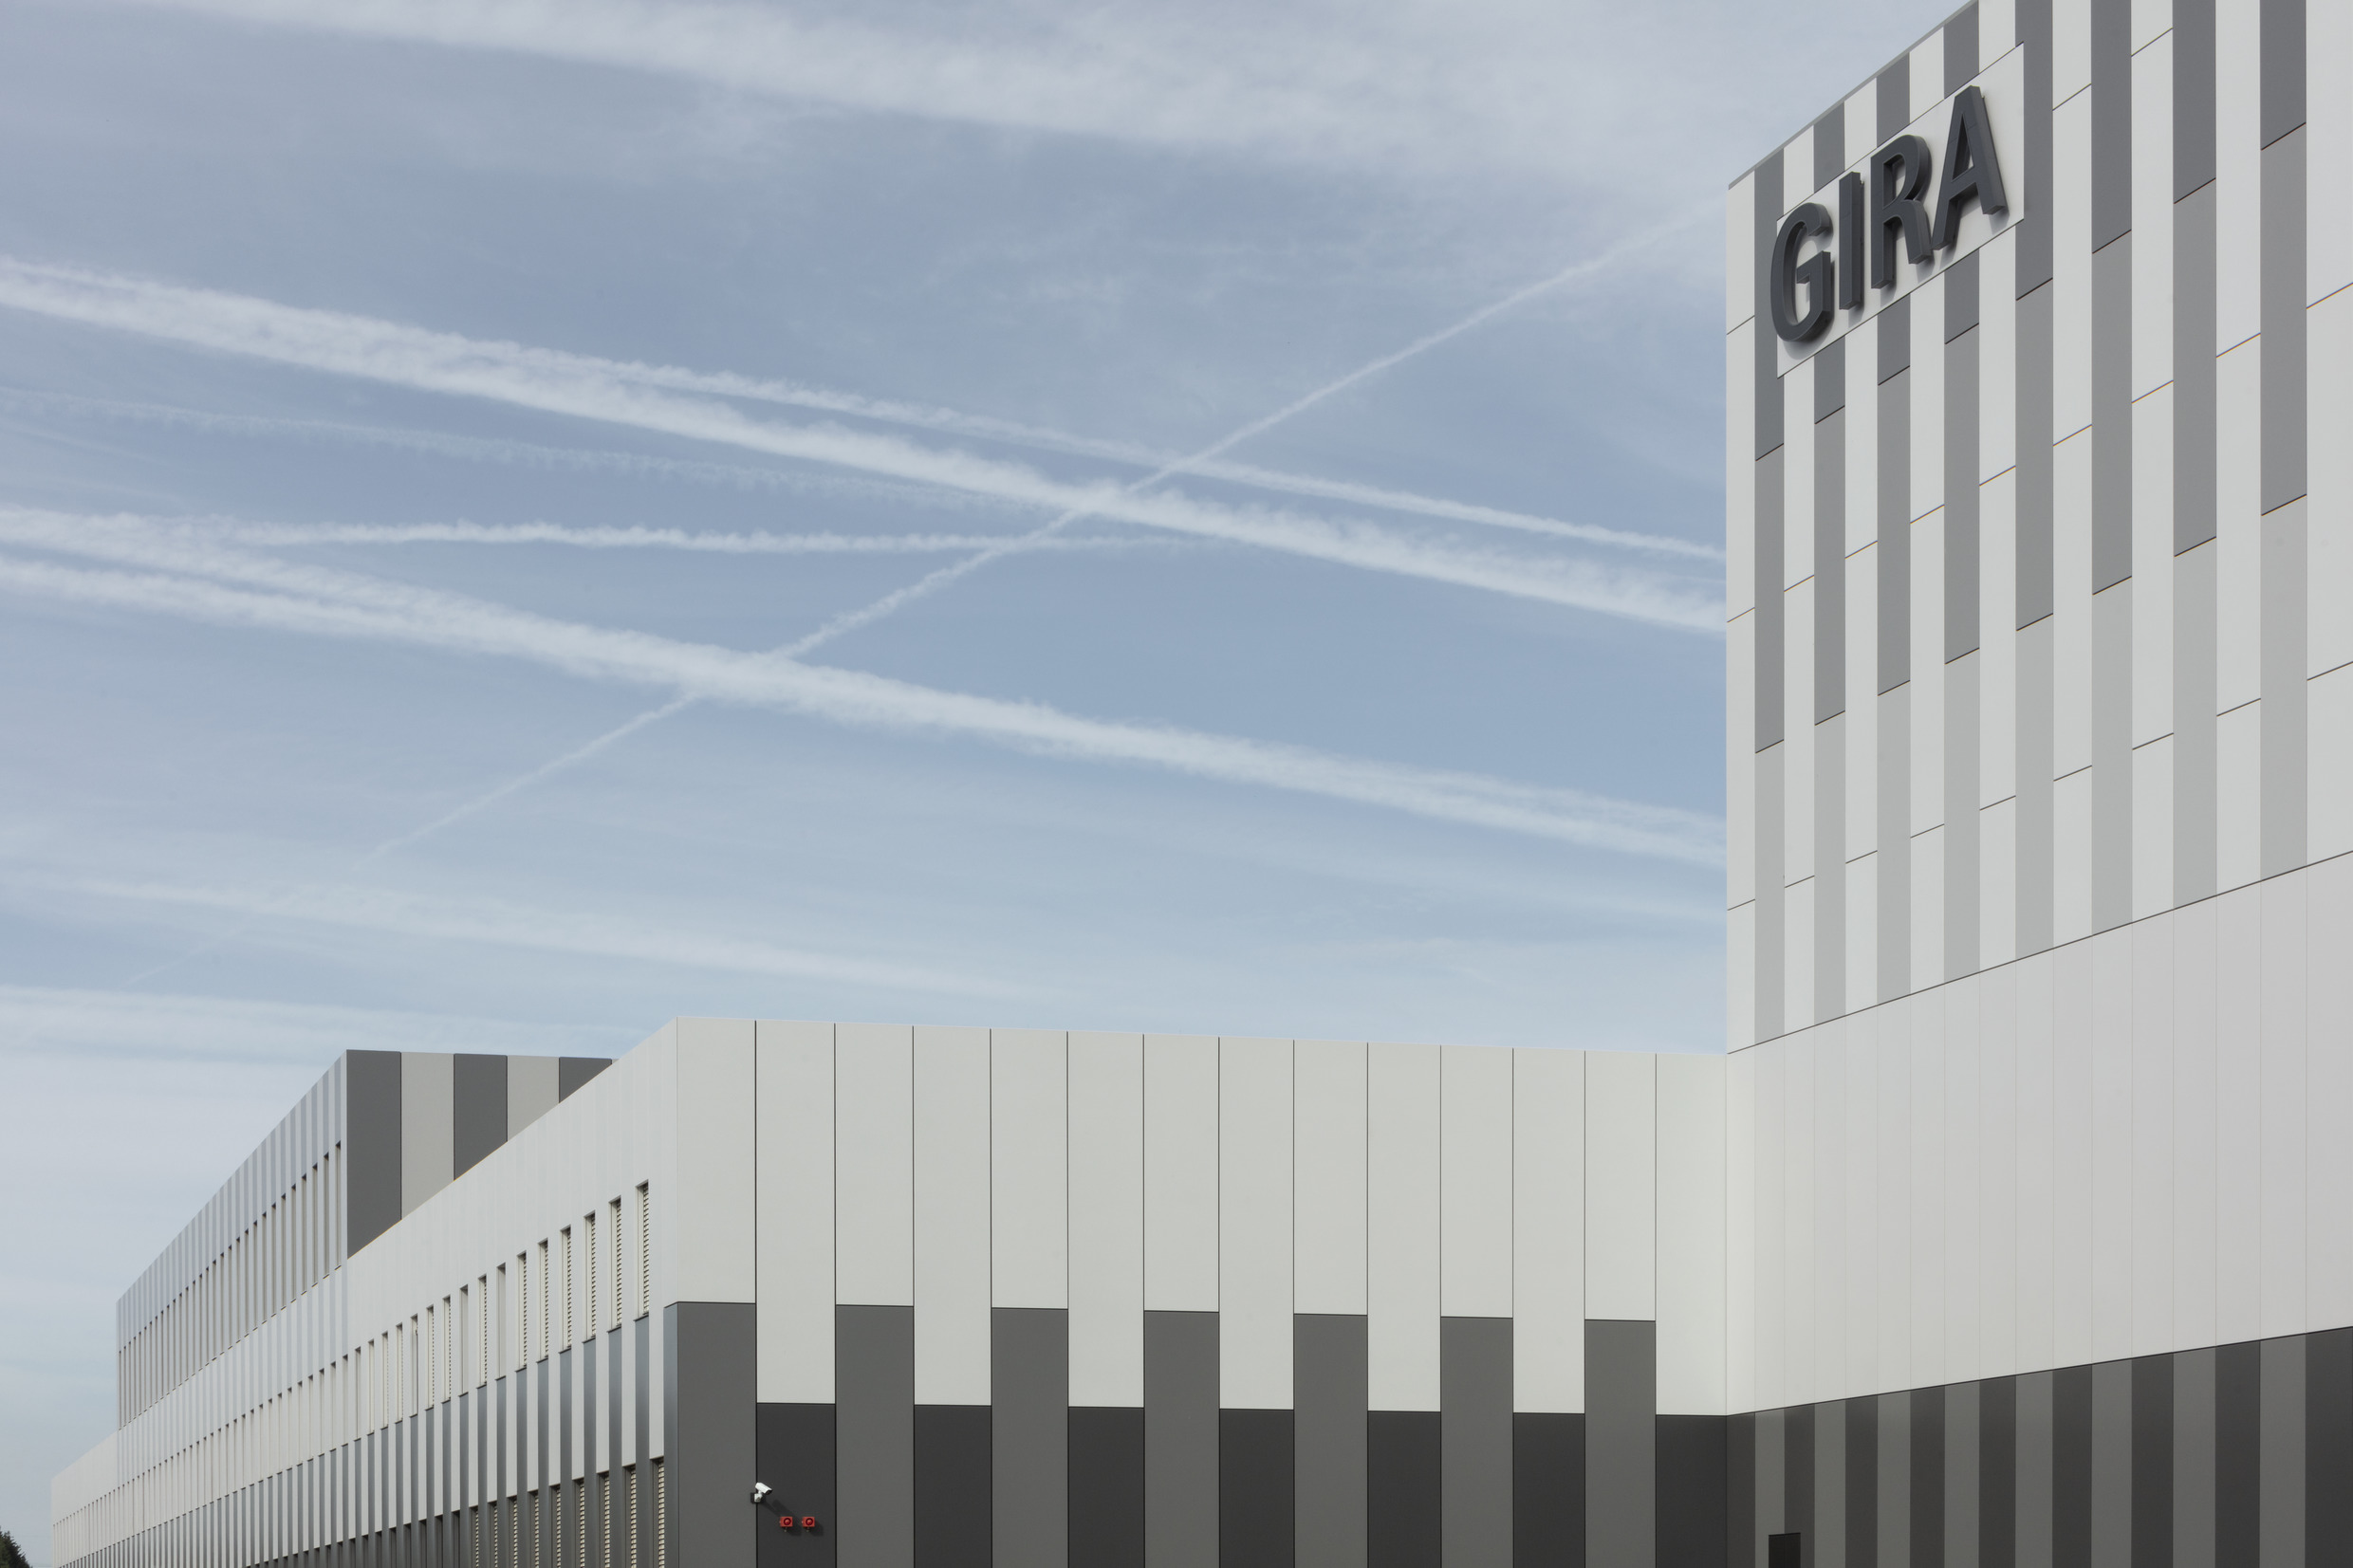 Gira Unternehmenssitz Außenperspektive der farblich oszillierenden Blechfassade